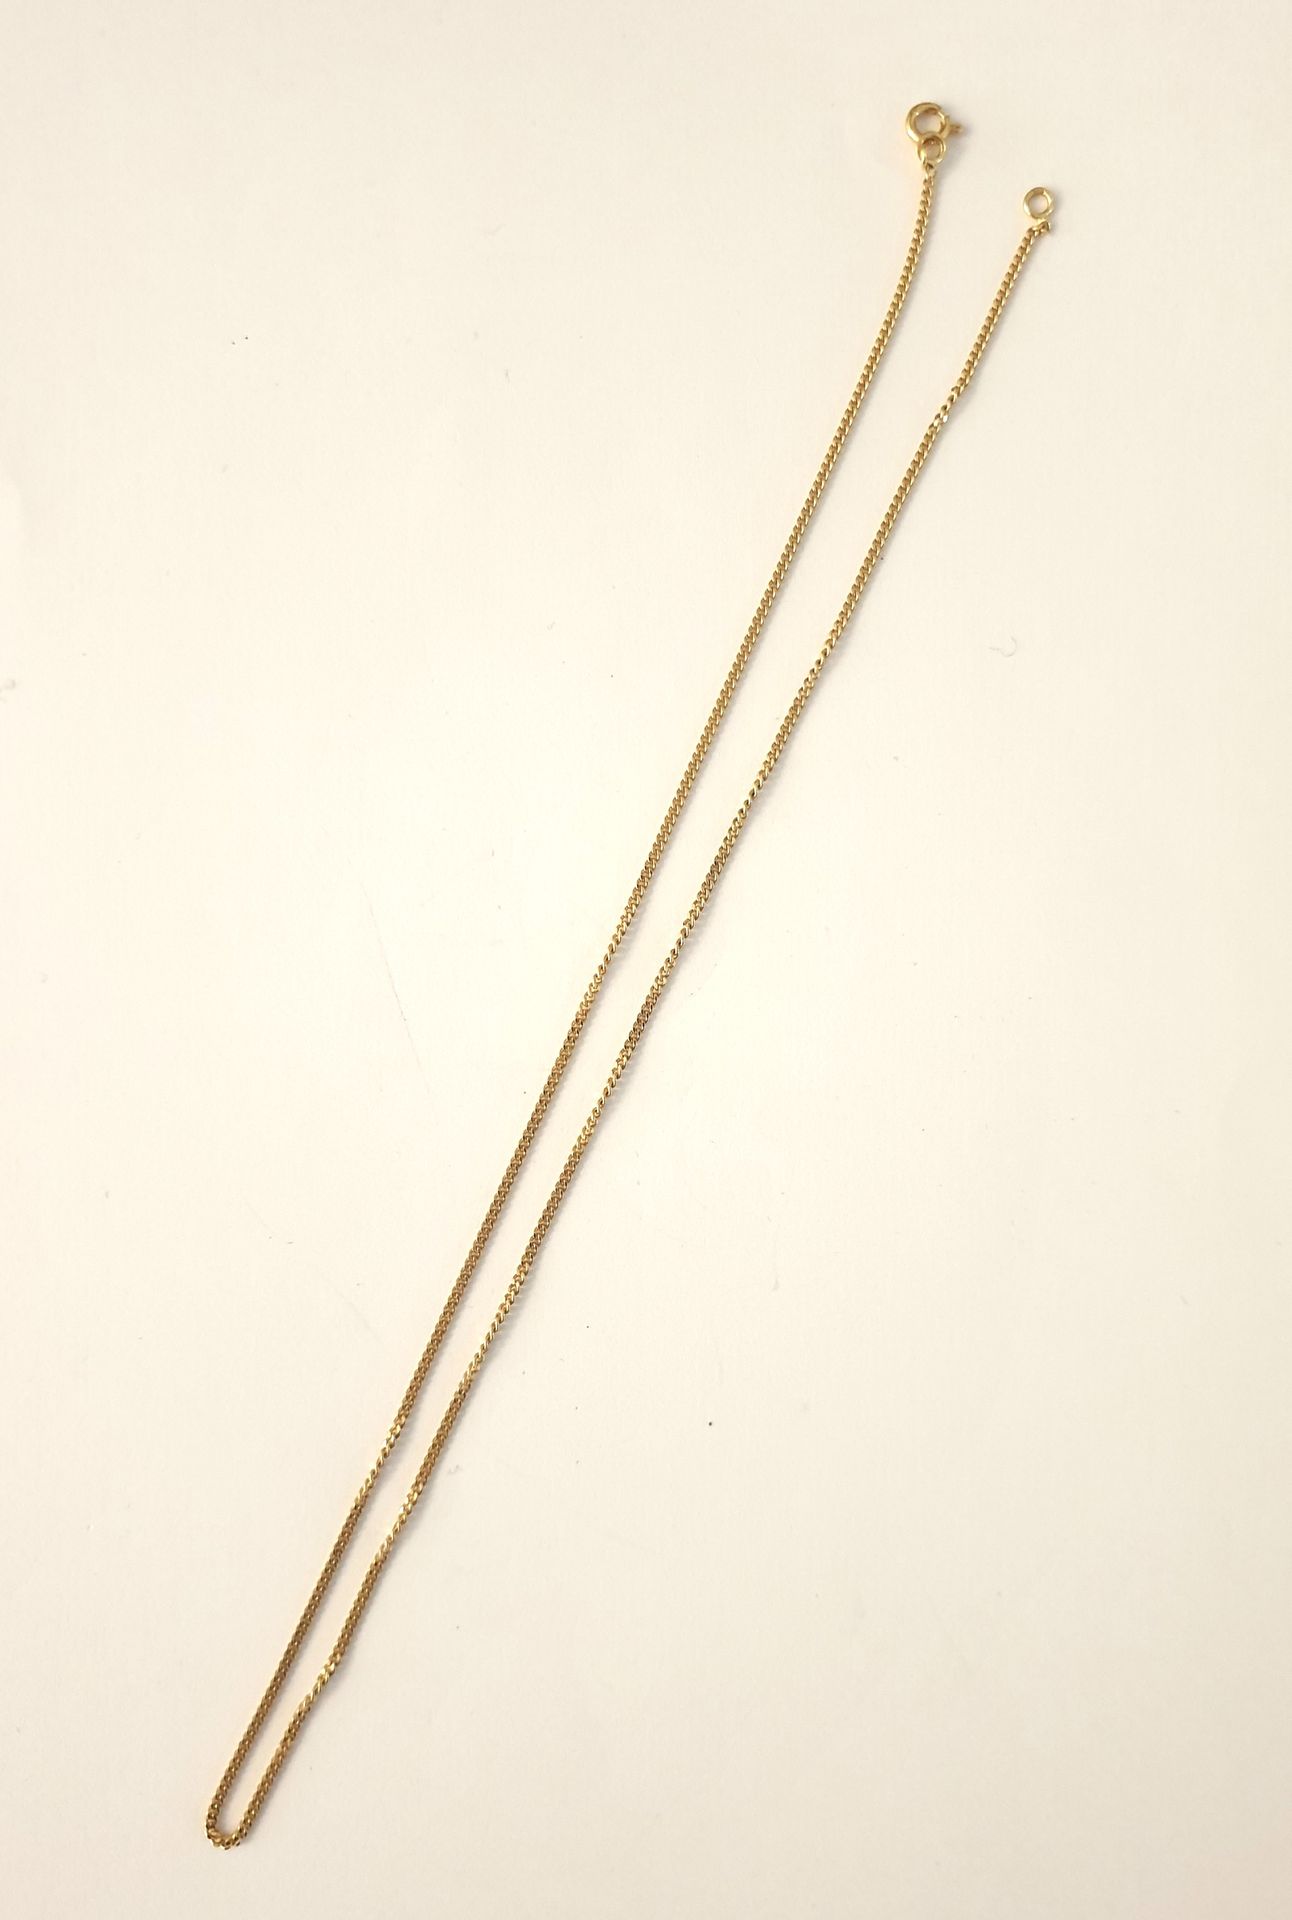 Null Chaine en or jaune 18k (750 ) à maille gourmette
L. 44,5 cm
Poids: 4, 42 g.&hellip;